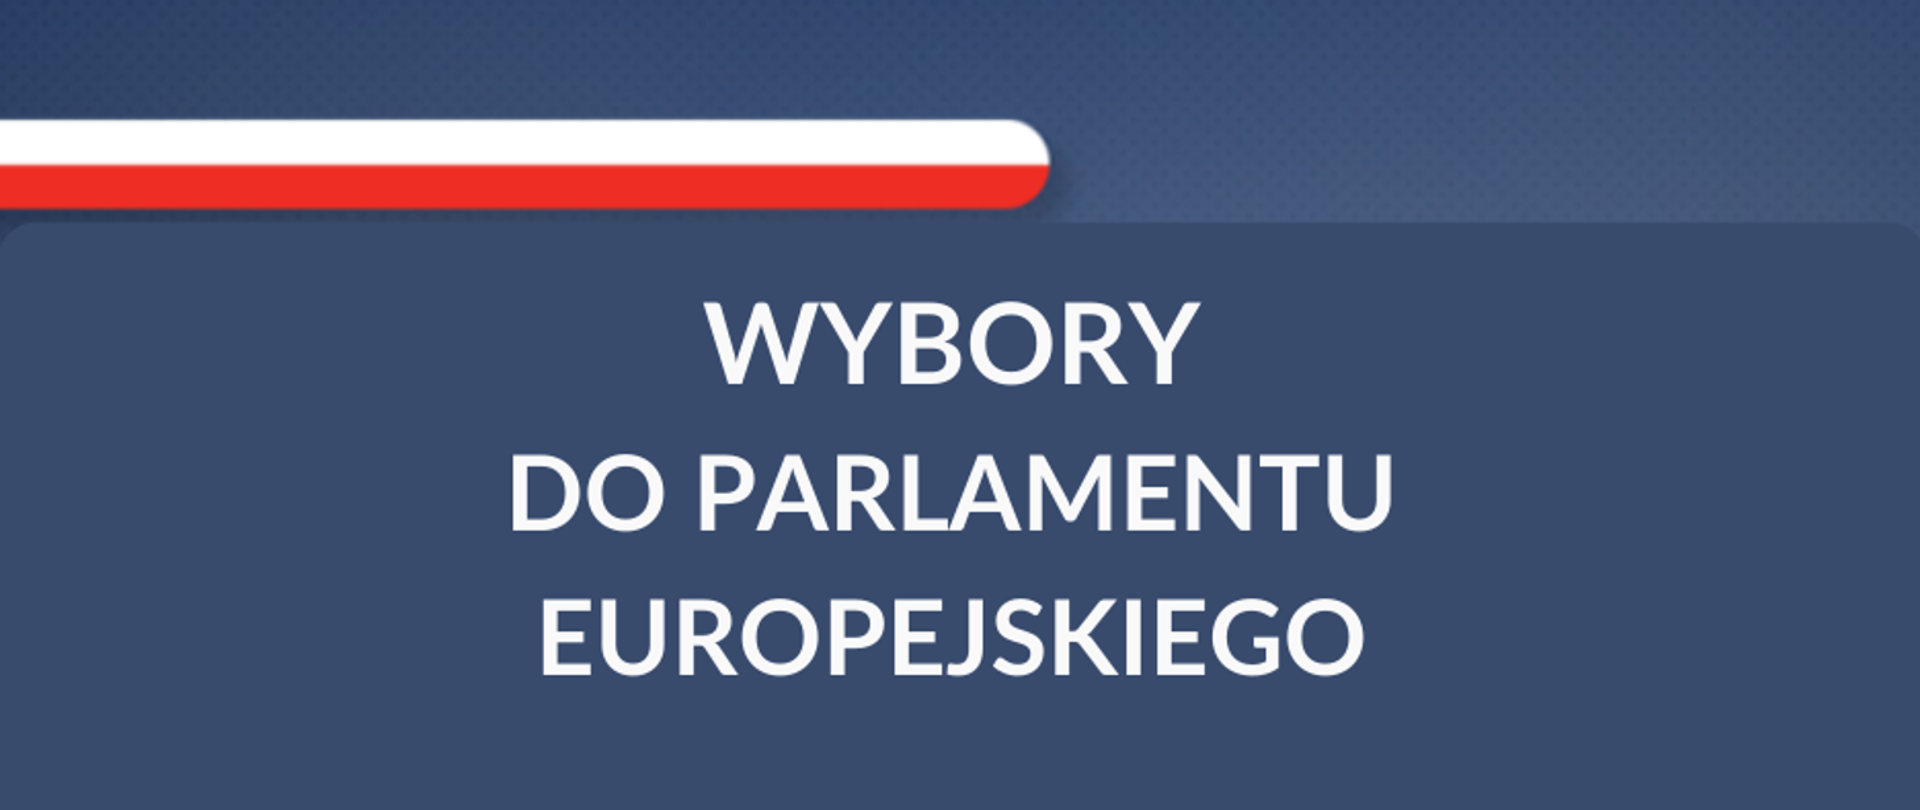 Baner Wybory do Parlamentu Europejskiego